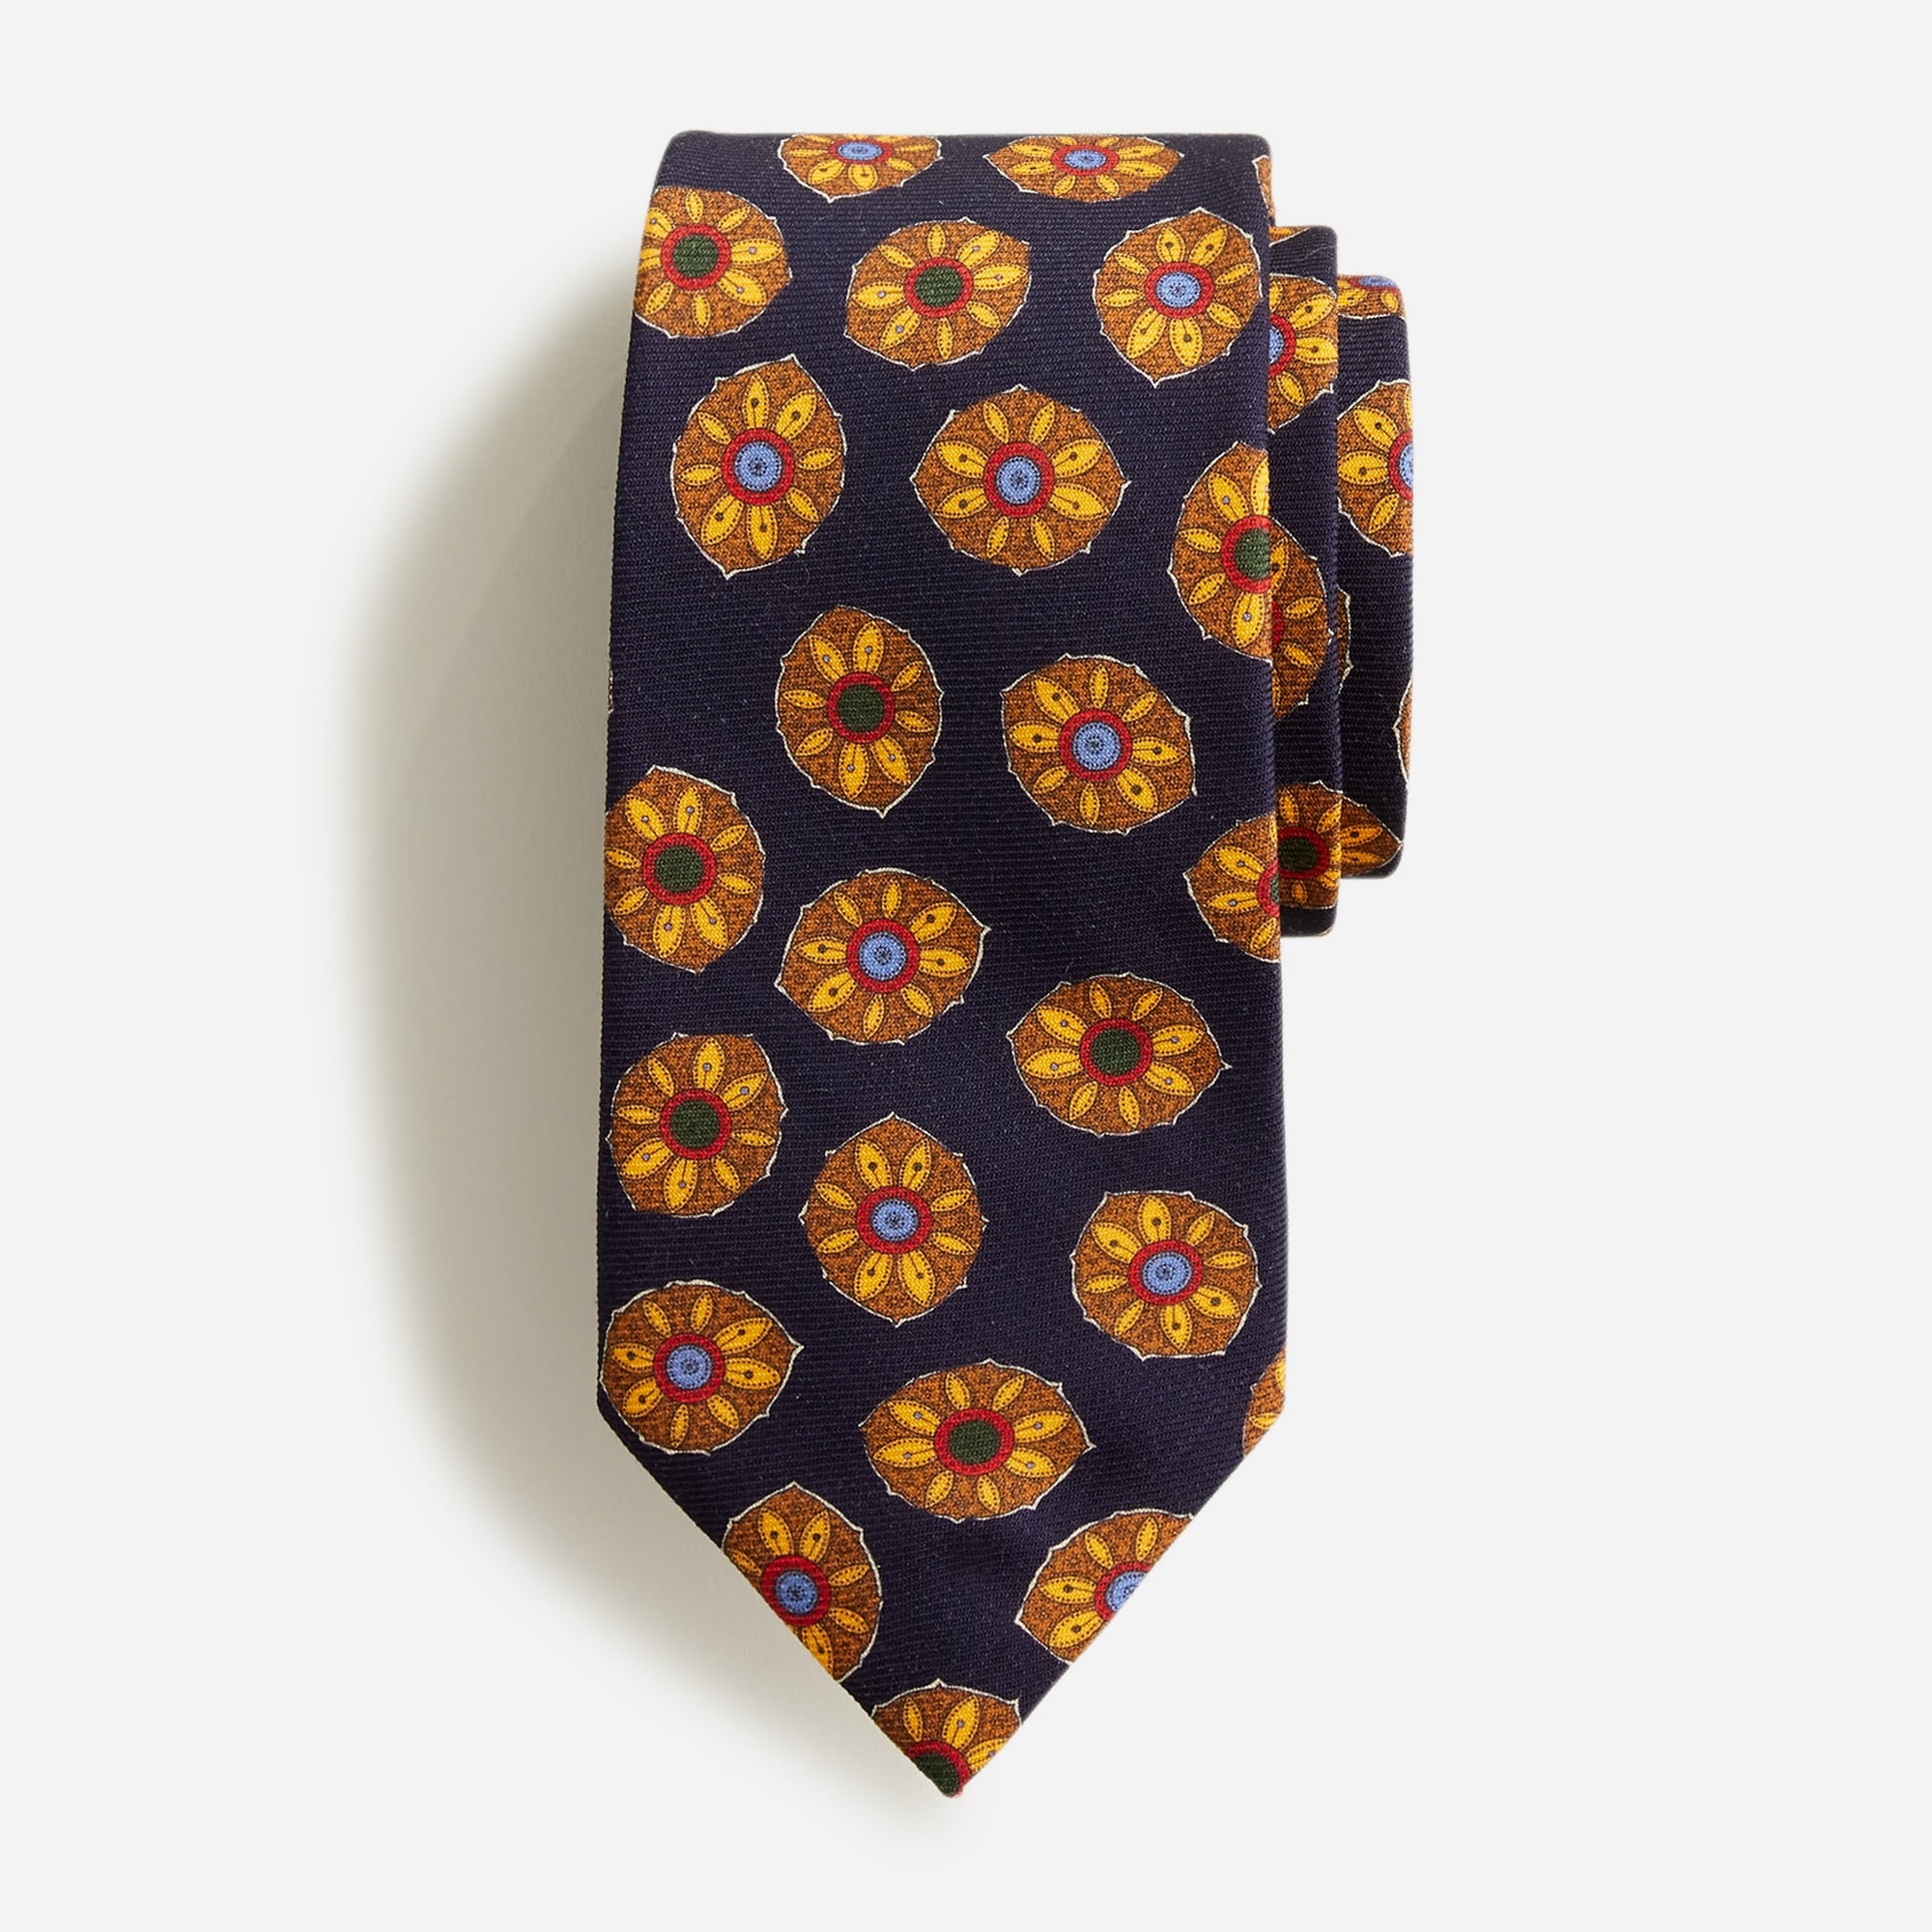  Wool challis tie in sunflower print